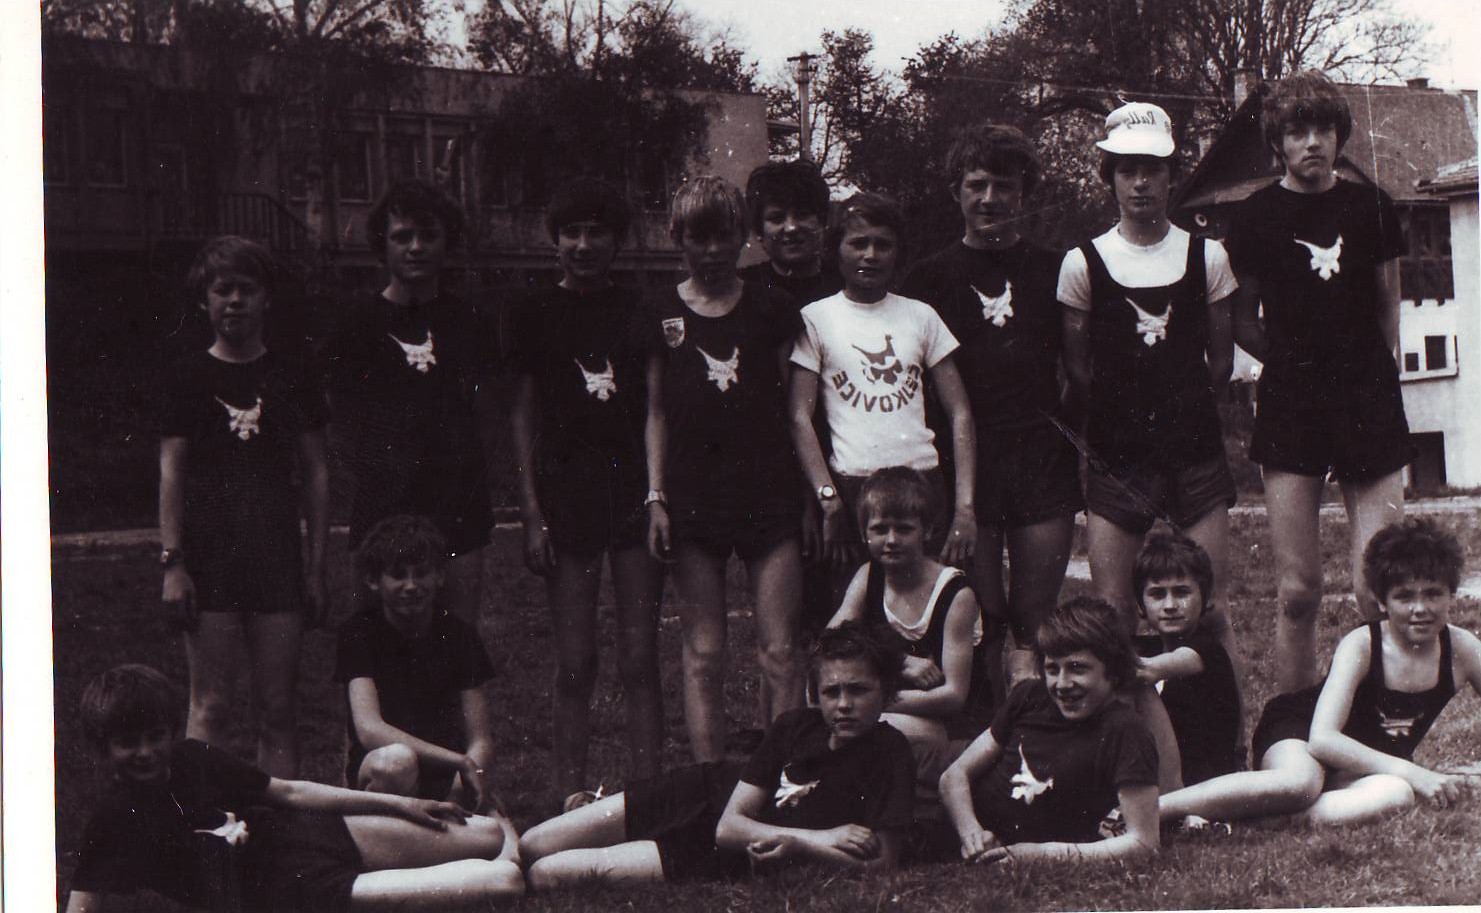 Družstvo žáků 1977